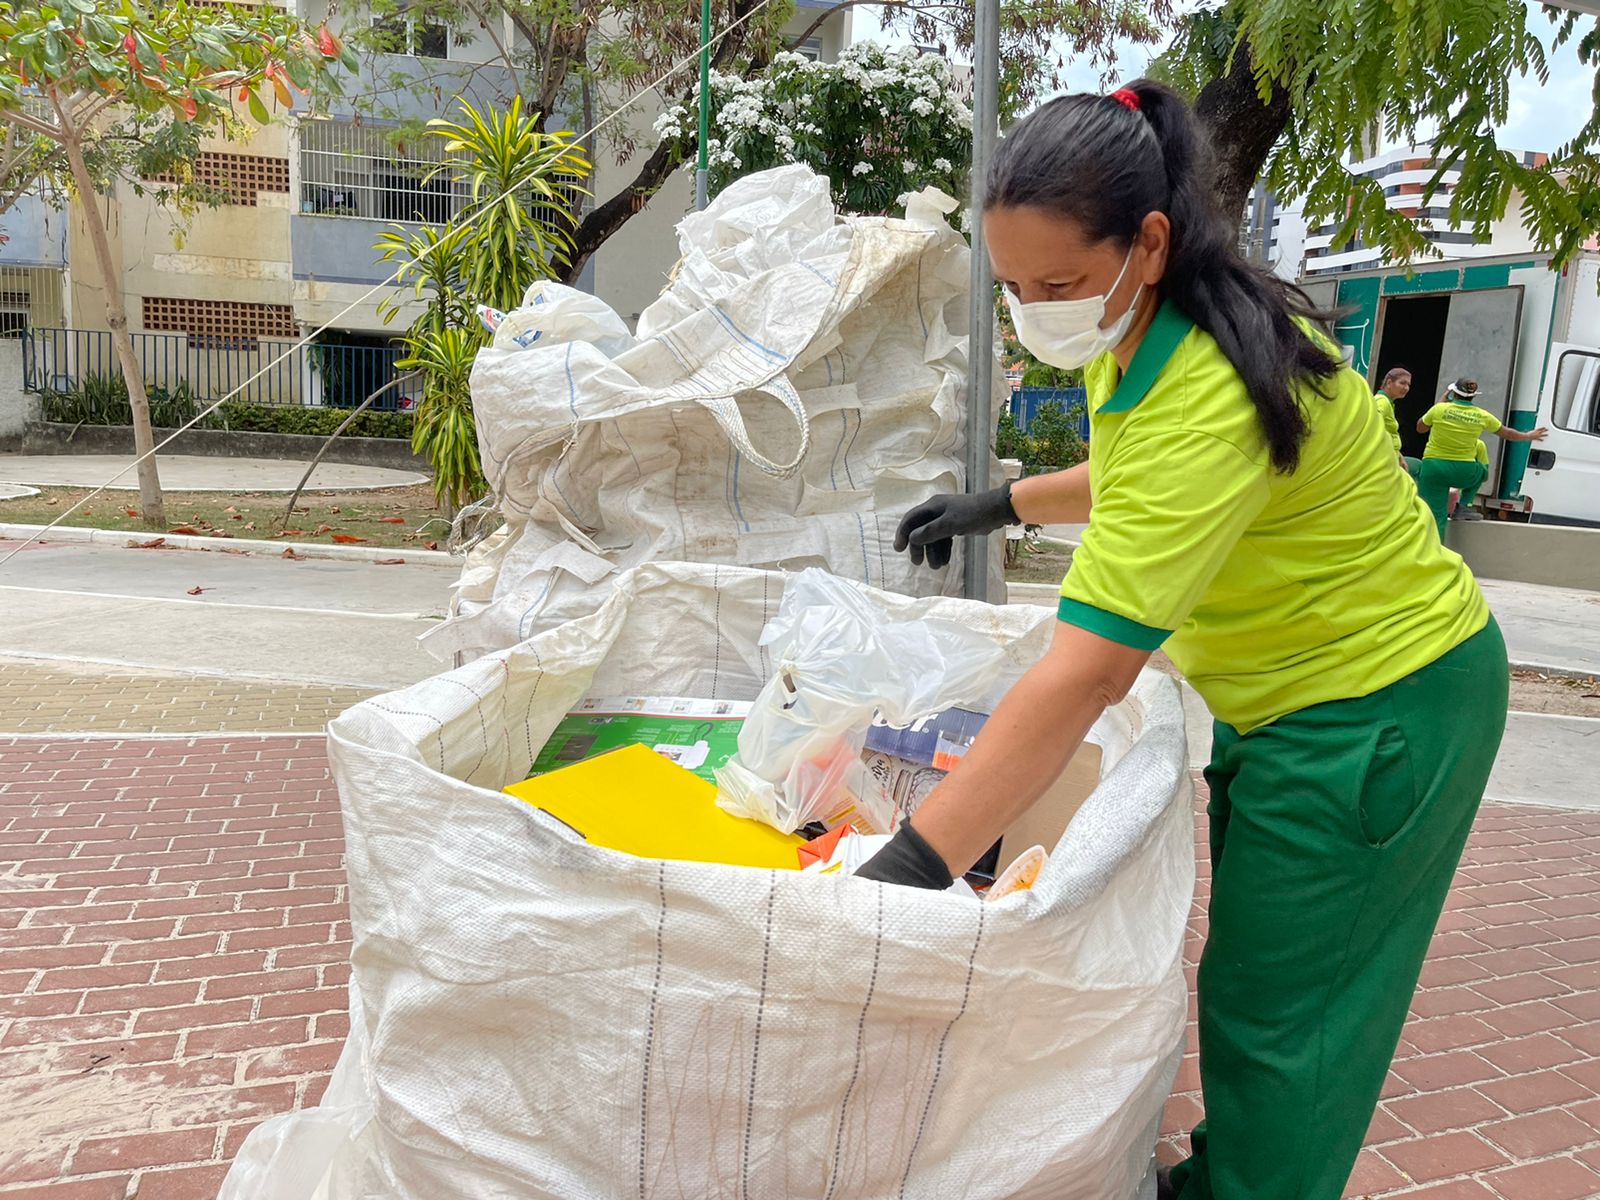 Cooperativas recolhem 110 toneladas de resíduos em novembro. Foto: Ascom Sudes